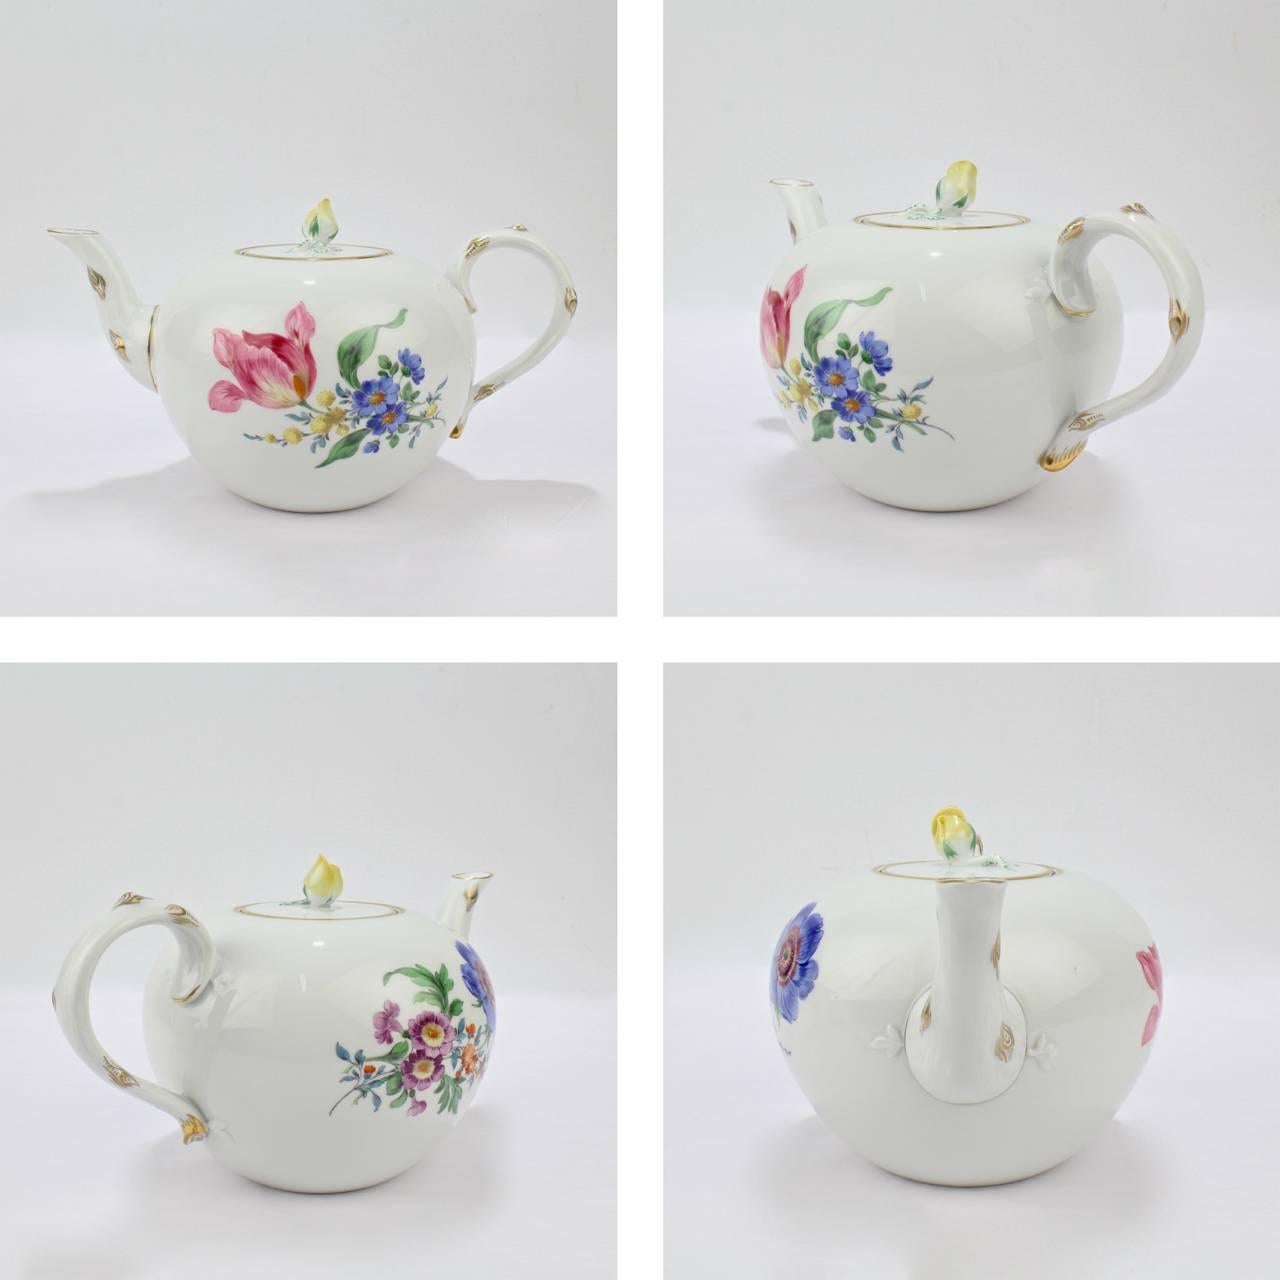 German Meissen Porcelain Tea Set with 'Deutsche Blumen' Flower Decoration, 20th Century